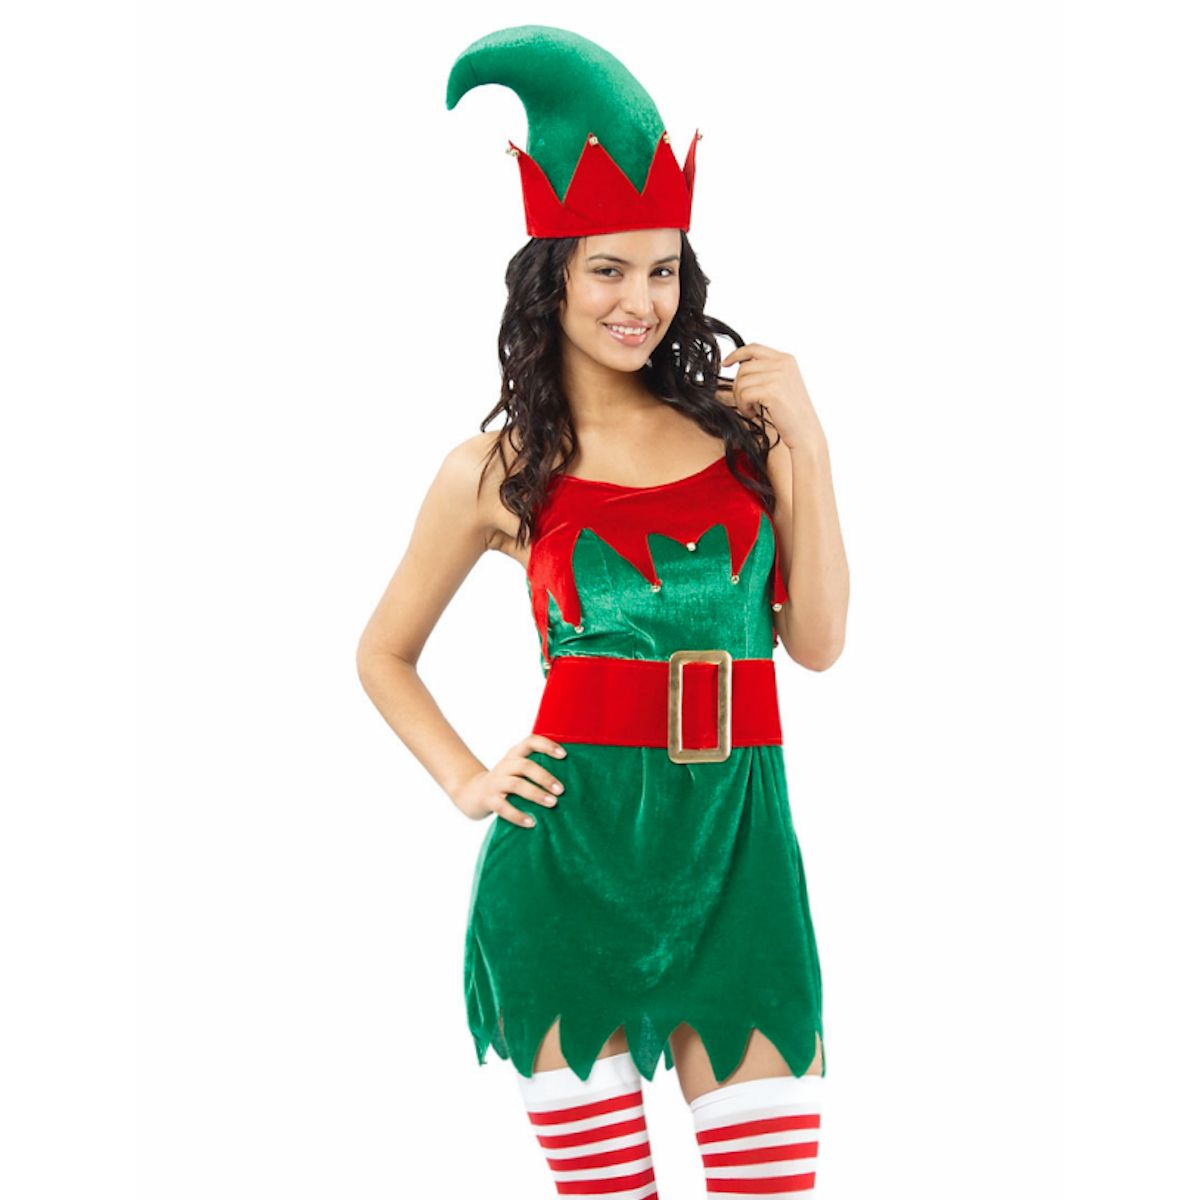 Santa's Helper ELF Velvet Women's Christmas Fancy Dress Costume with hat